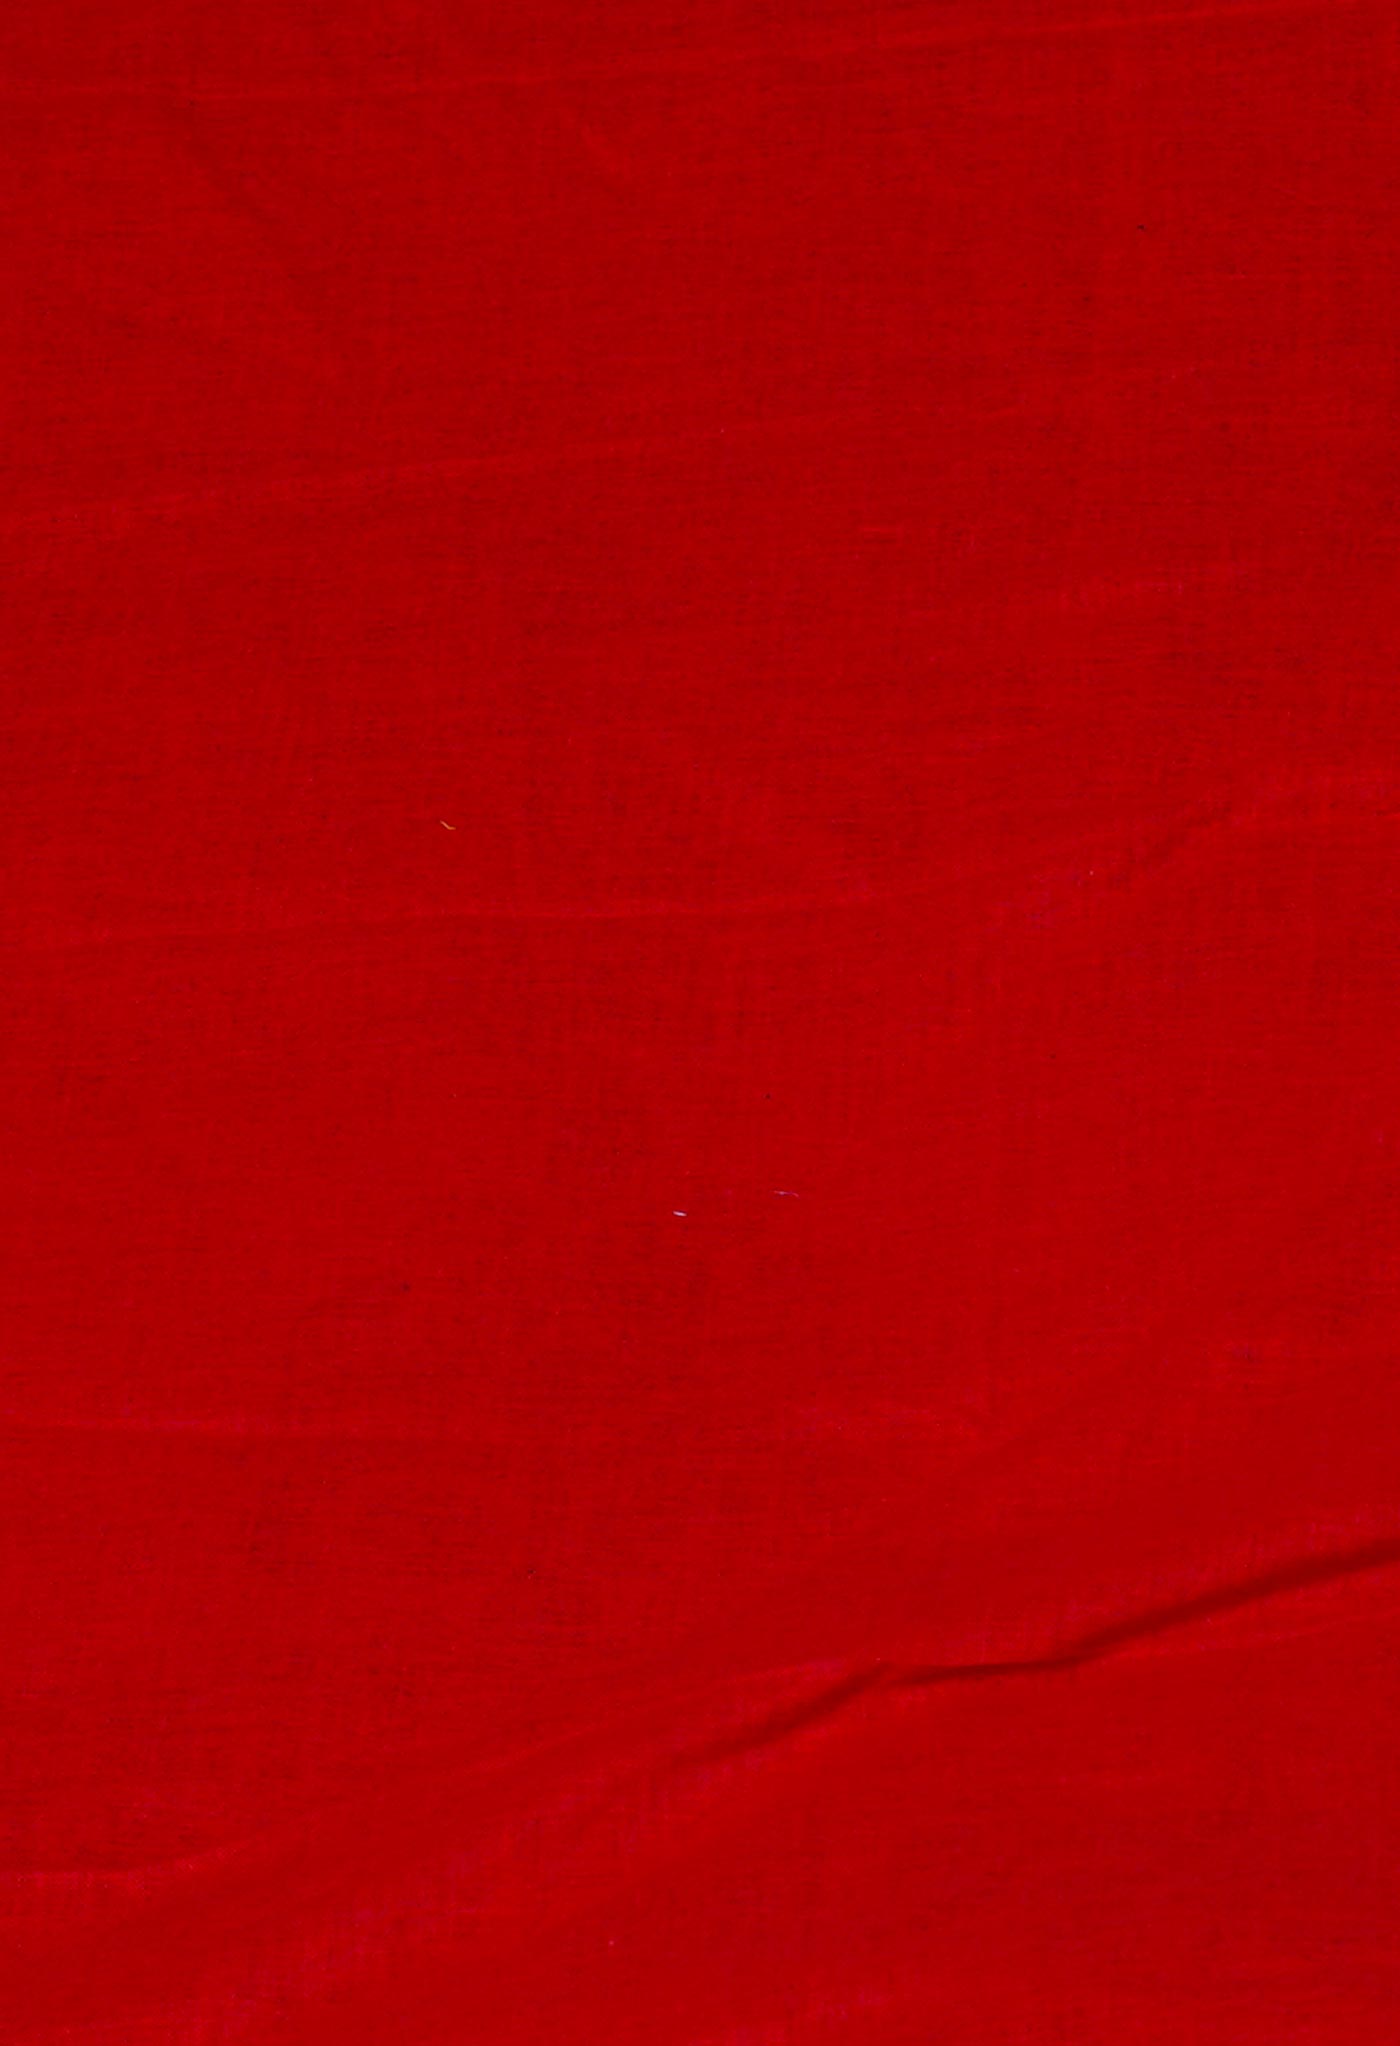 Red Pure Block Printed Mulmul Cotton Saree-UNM59791